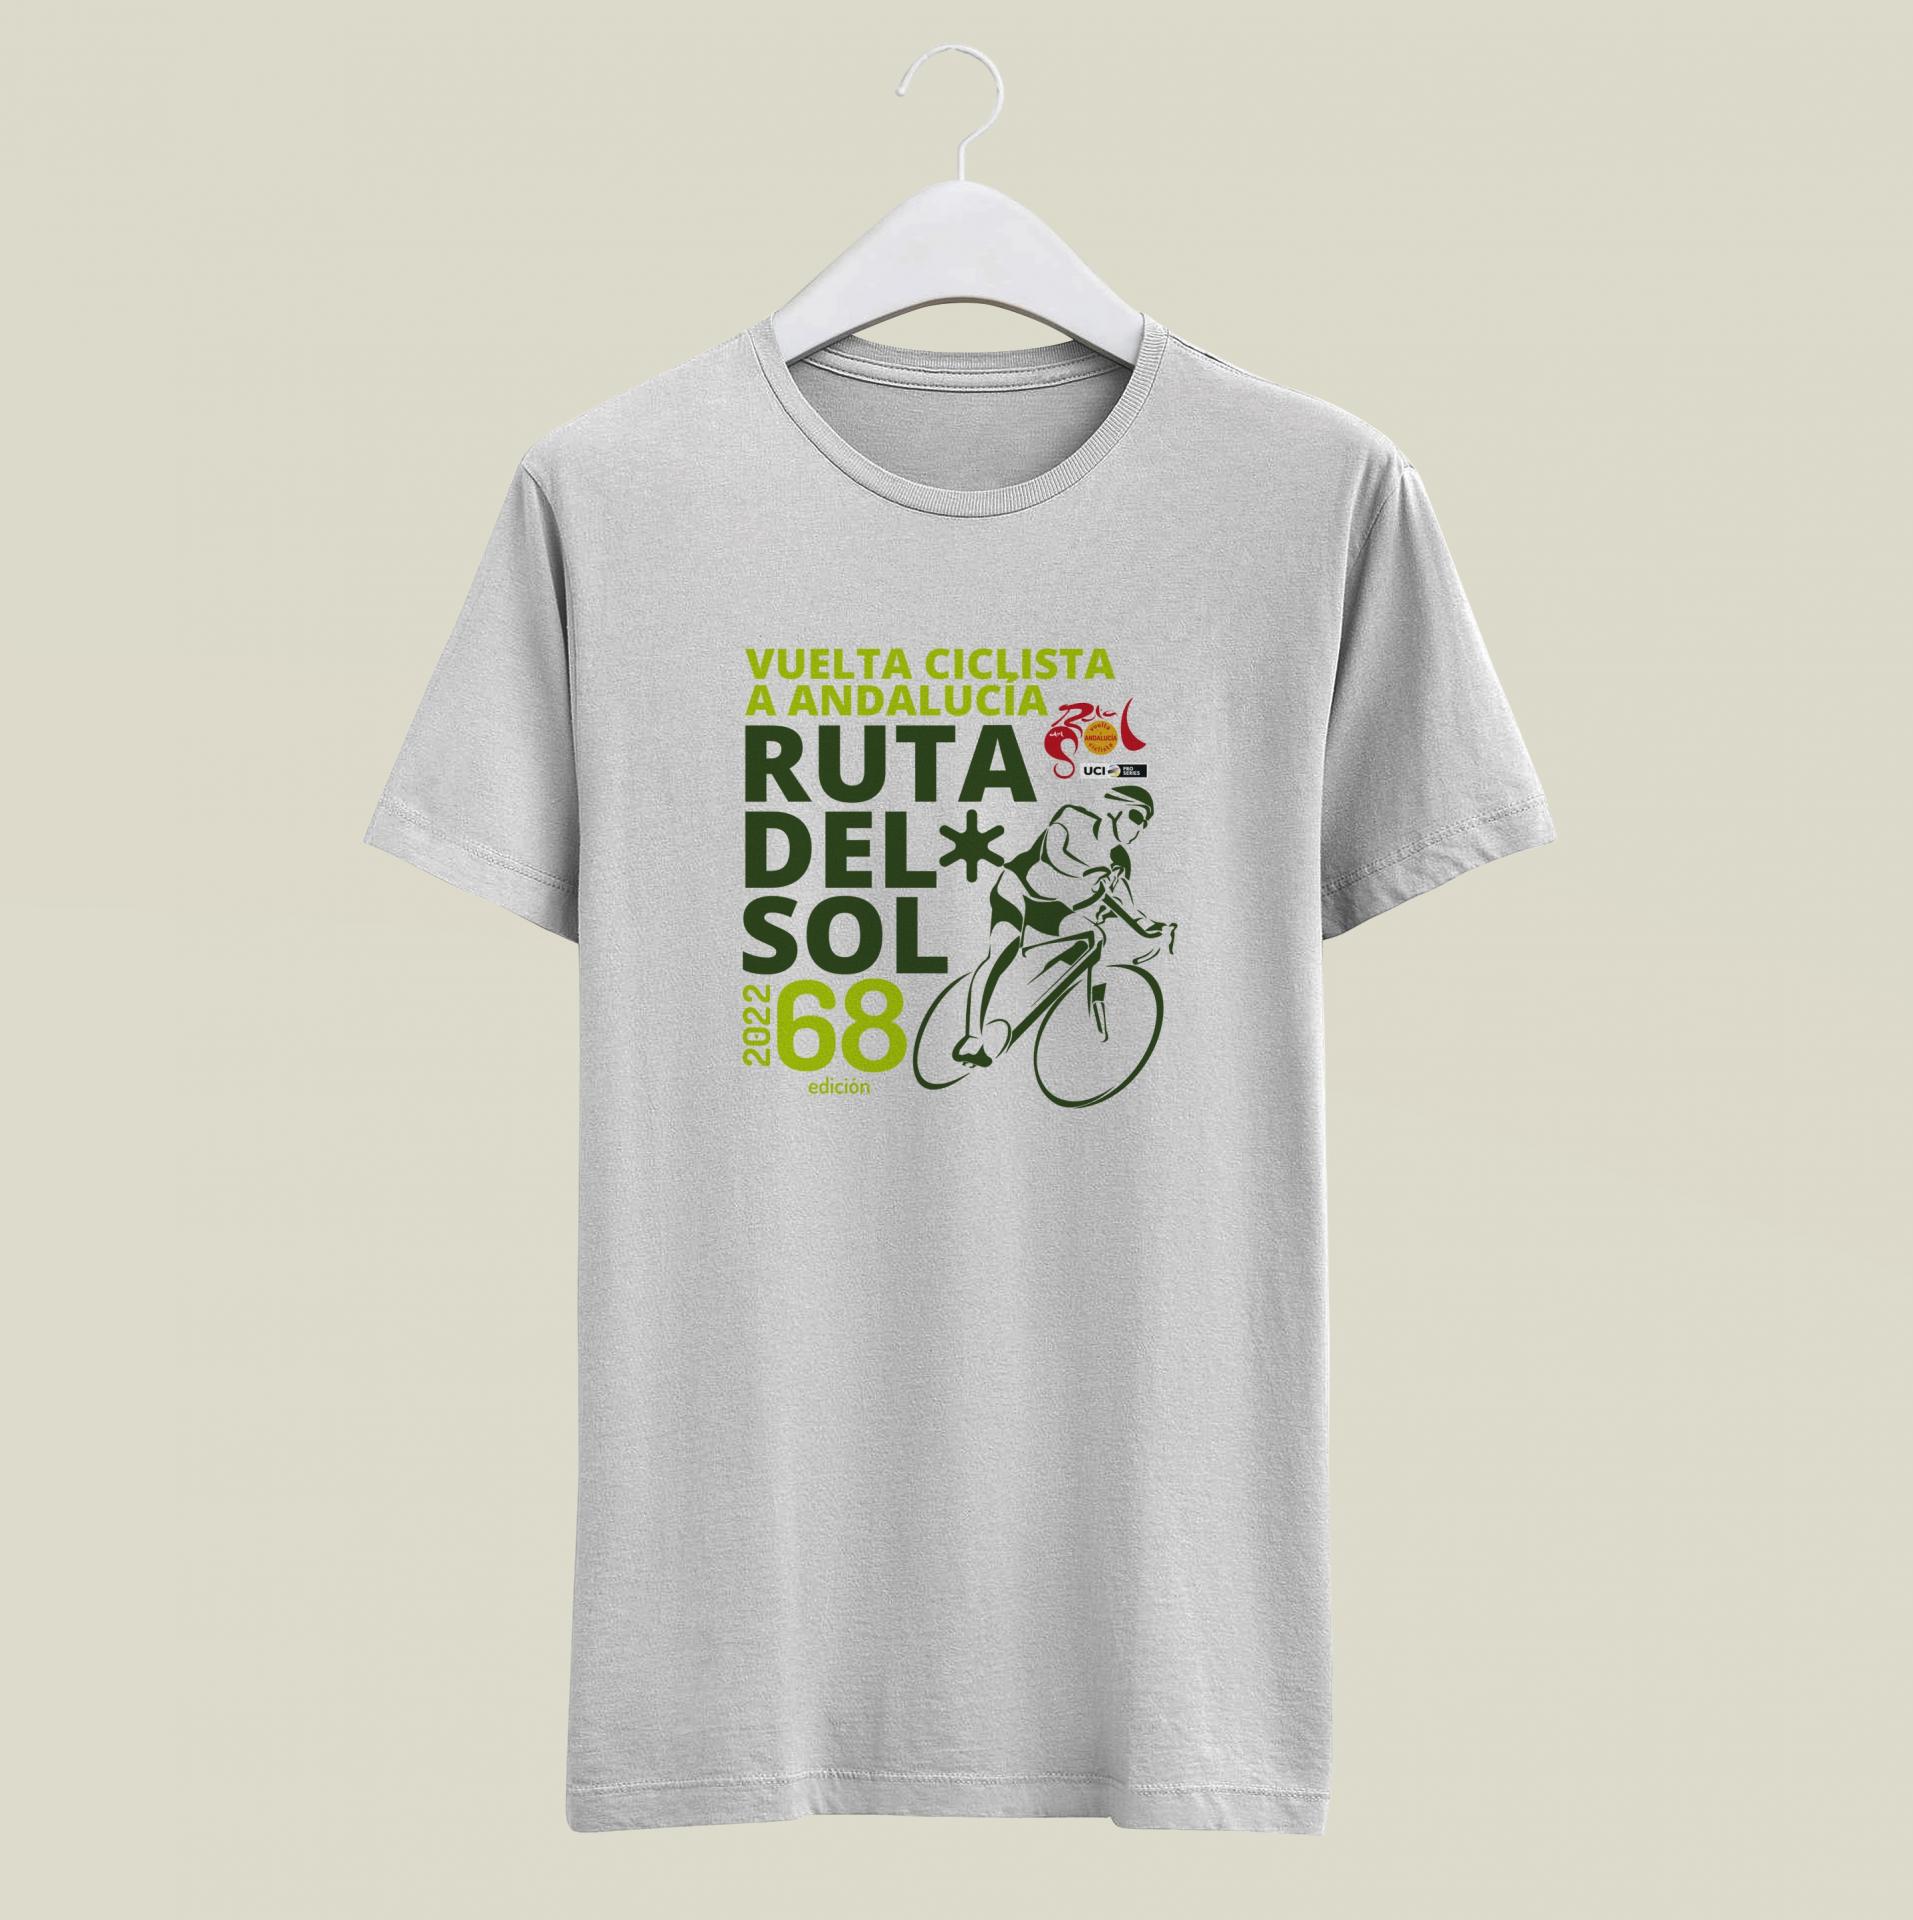 Camiseta oficial 68º EDICION RUTA DEL SOL - VUELTA CICLISTA ANDALUCIA - BLANCA